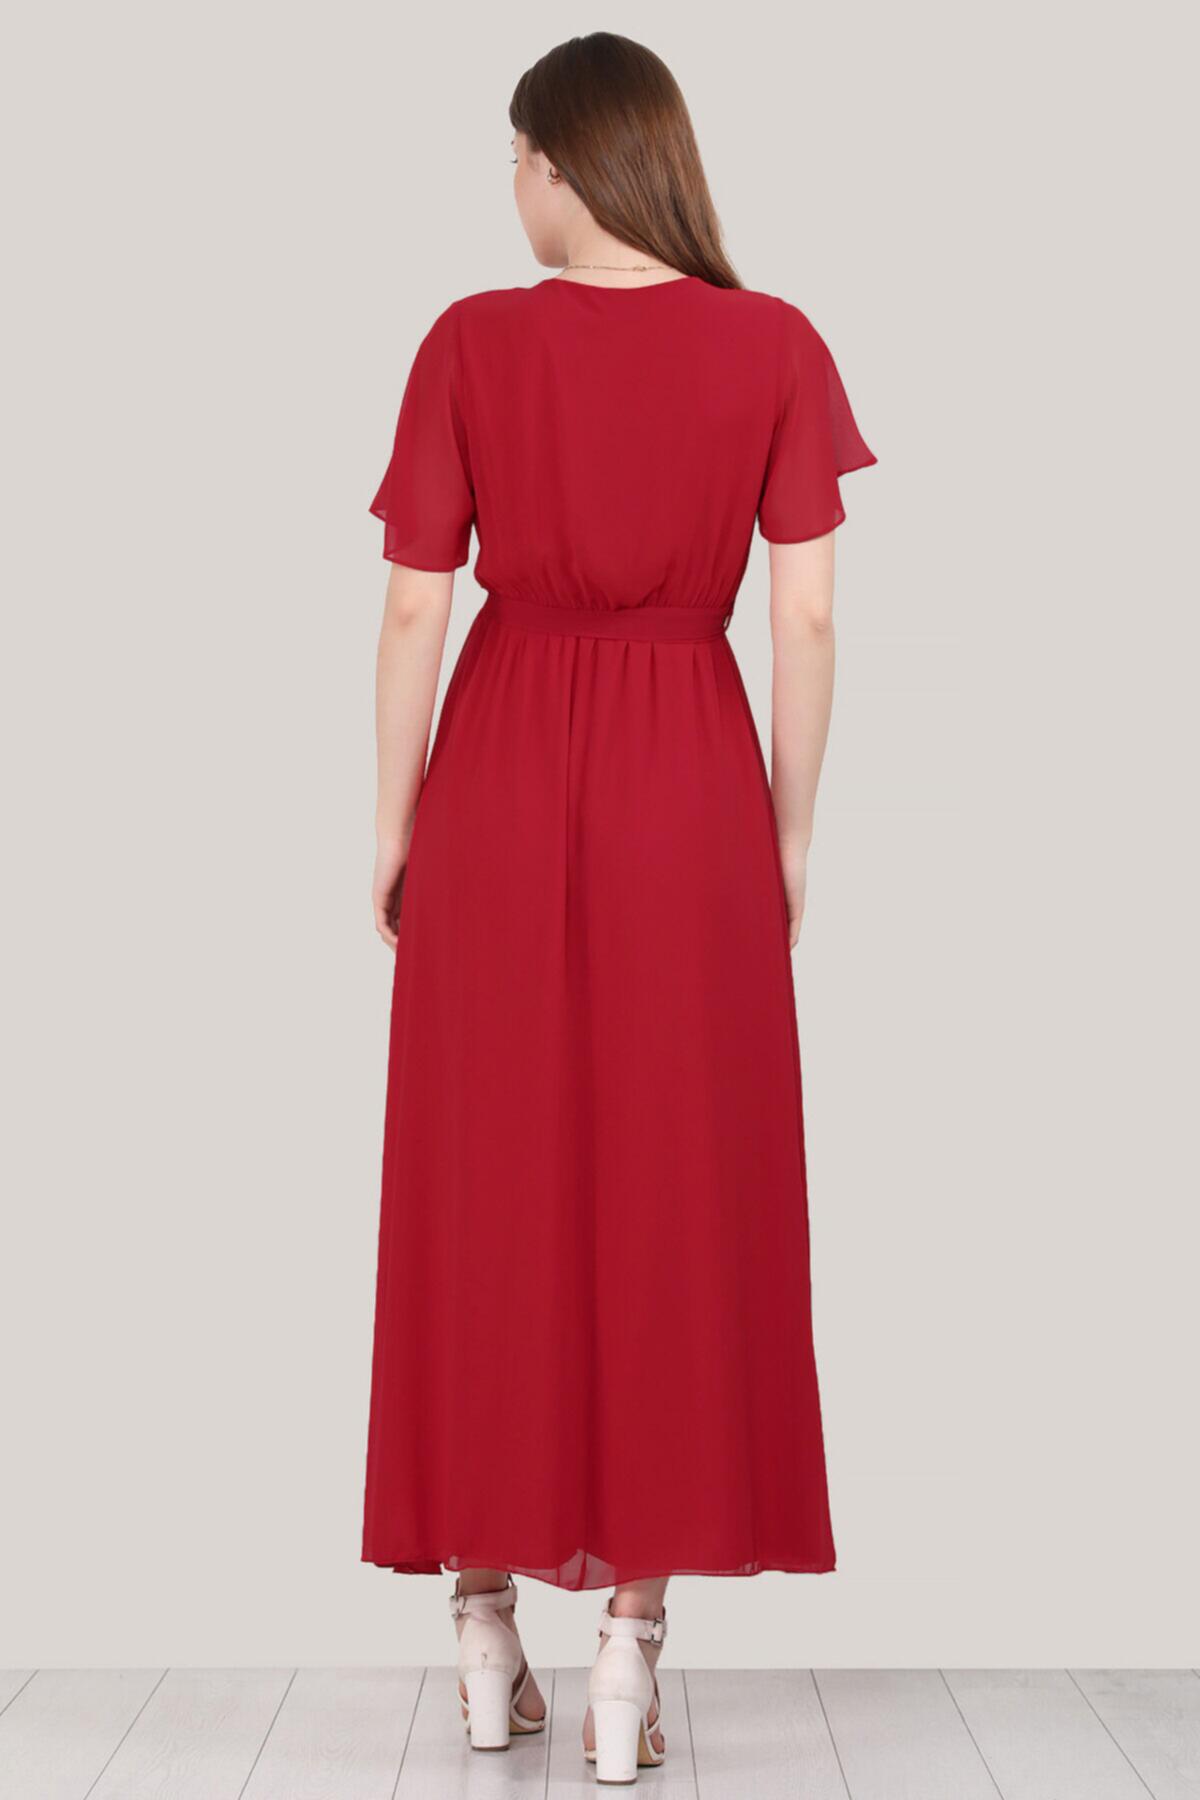 Kadın Kruvaze Yaka Şifon Elbise Kırmızı | Patırtı